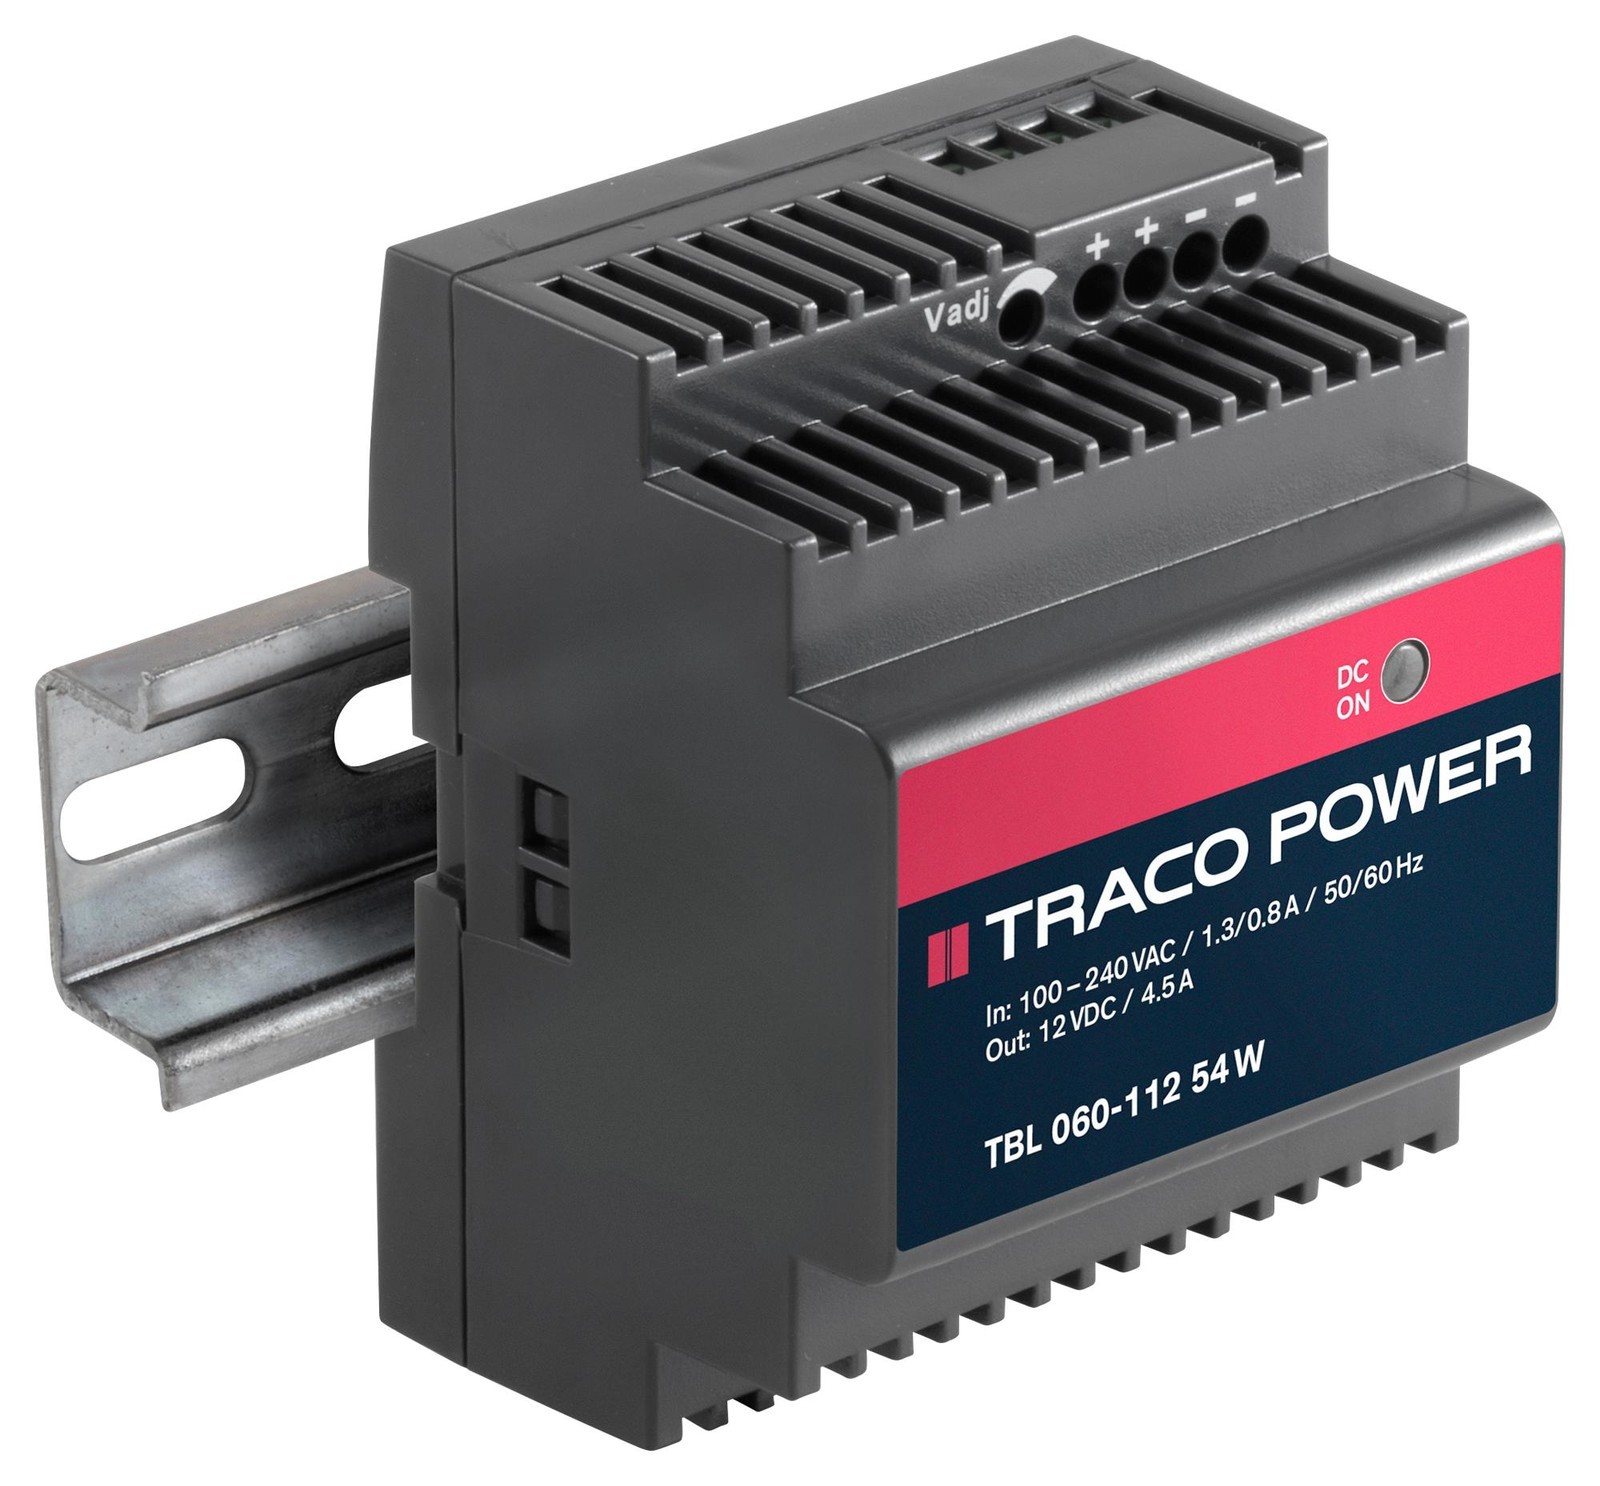 TRACO Power Tbl 060-112 Ac/dc, 12V/4.5A/60W, Din